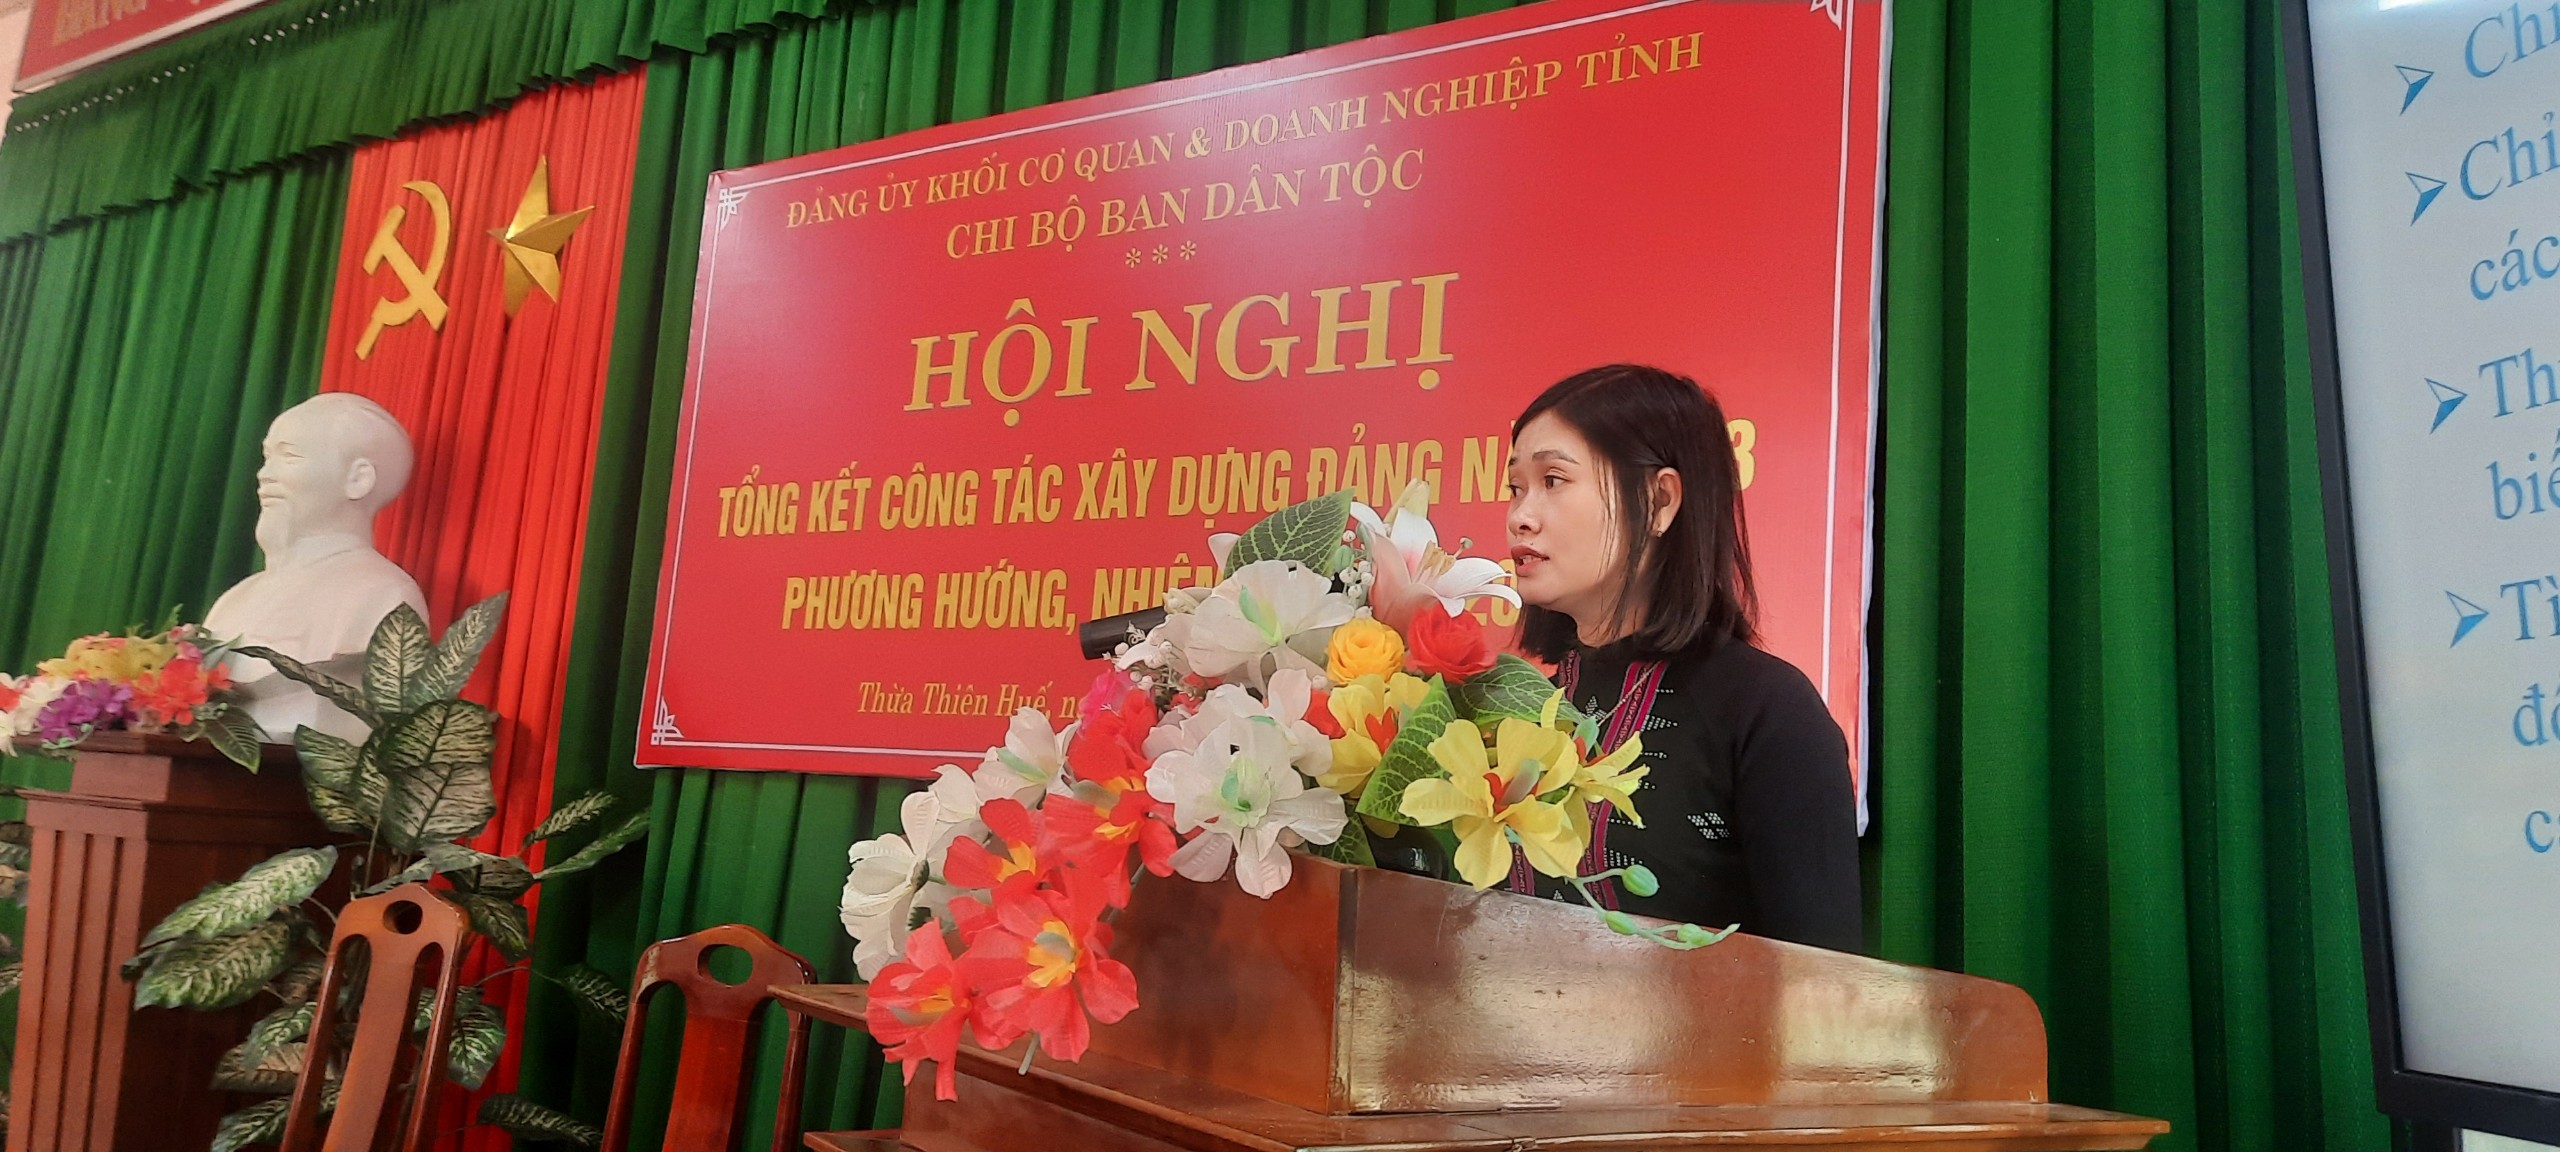 Đồng chí Nguyễn Thị Phương Ngọc thay mặt Chi ủy trình bày tóm tắt Báo cáo công tác xây dựng Đảng năm 2023